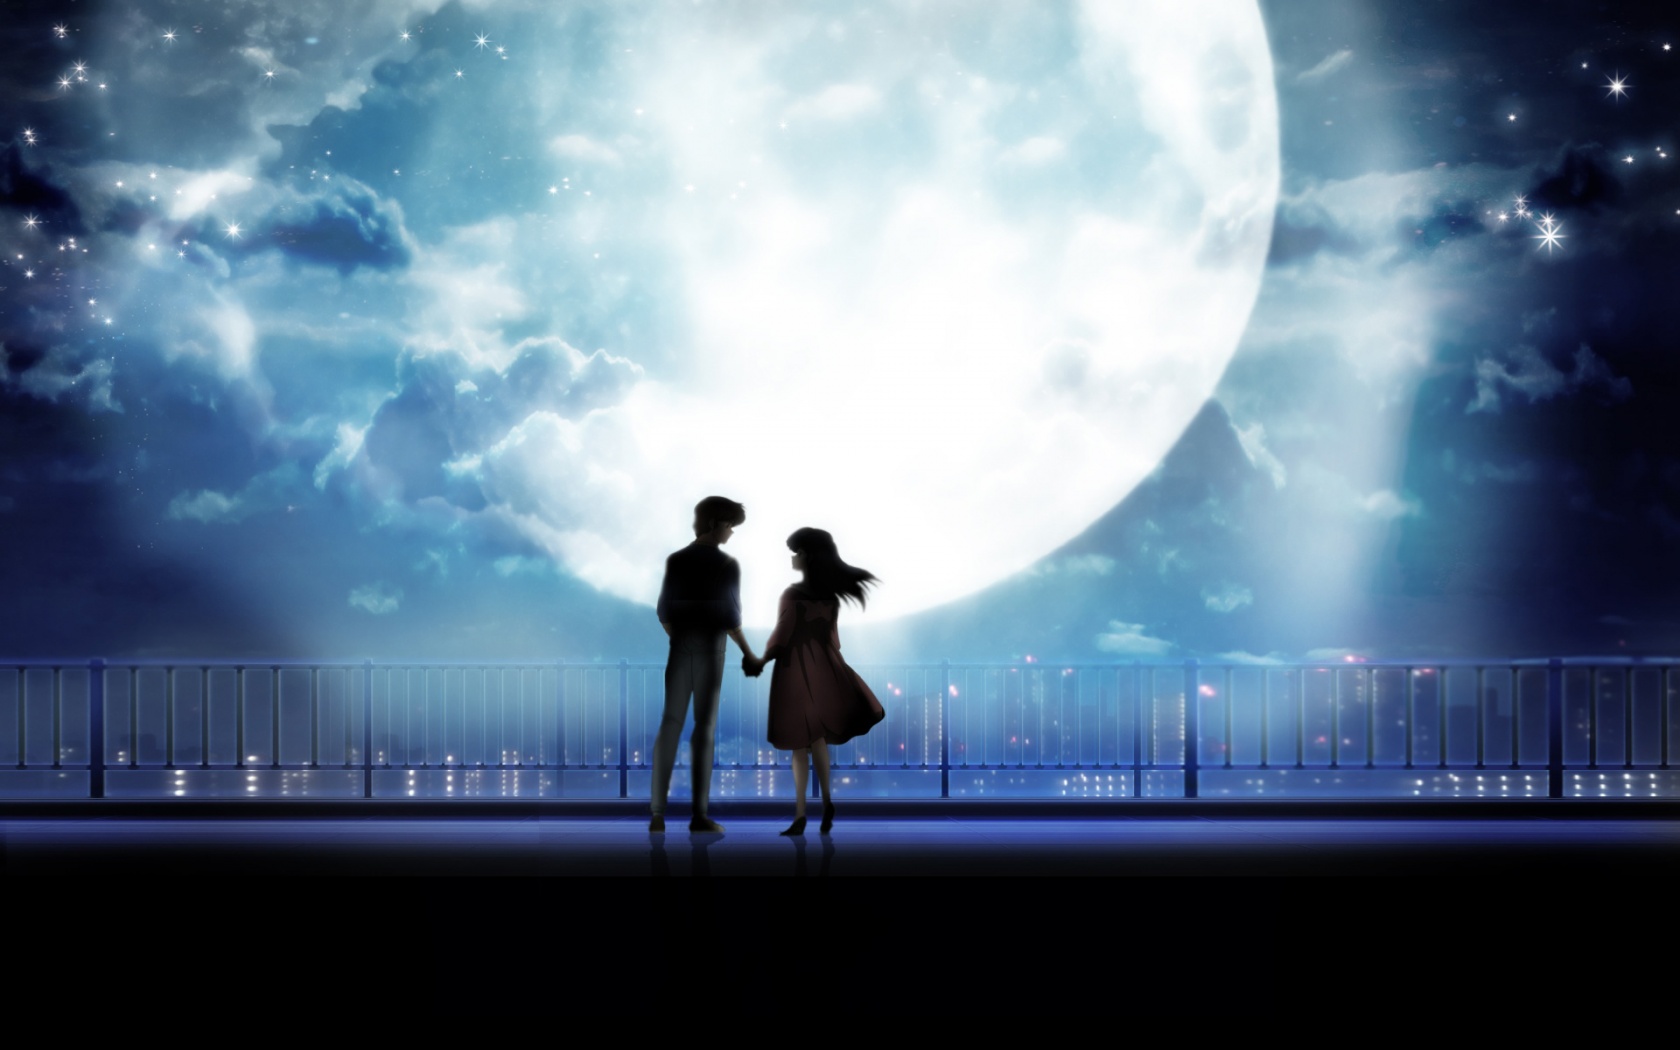 Anime cặp đôi nắm tay trăng sáng: Tình yêu không chỉ đẹp trong đời thực, mà còn đẹp trong thế giới anime. Nếu bạn yêu thích anime, hãy tìm đến bức tranh Anime cặp đôi nắm tay trăng sáng, bạn sẽ được trải nghiệm một tình yêu đầy lãng mạn và đẹp nhất.